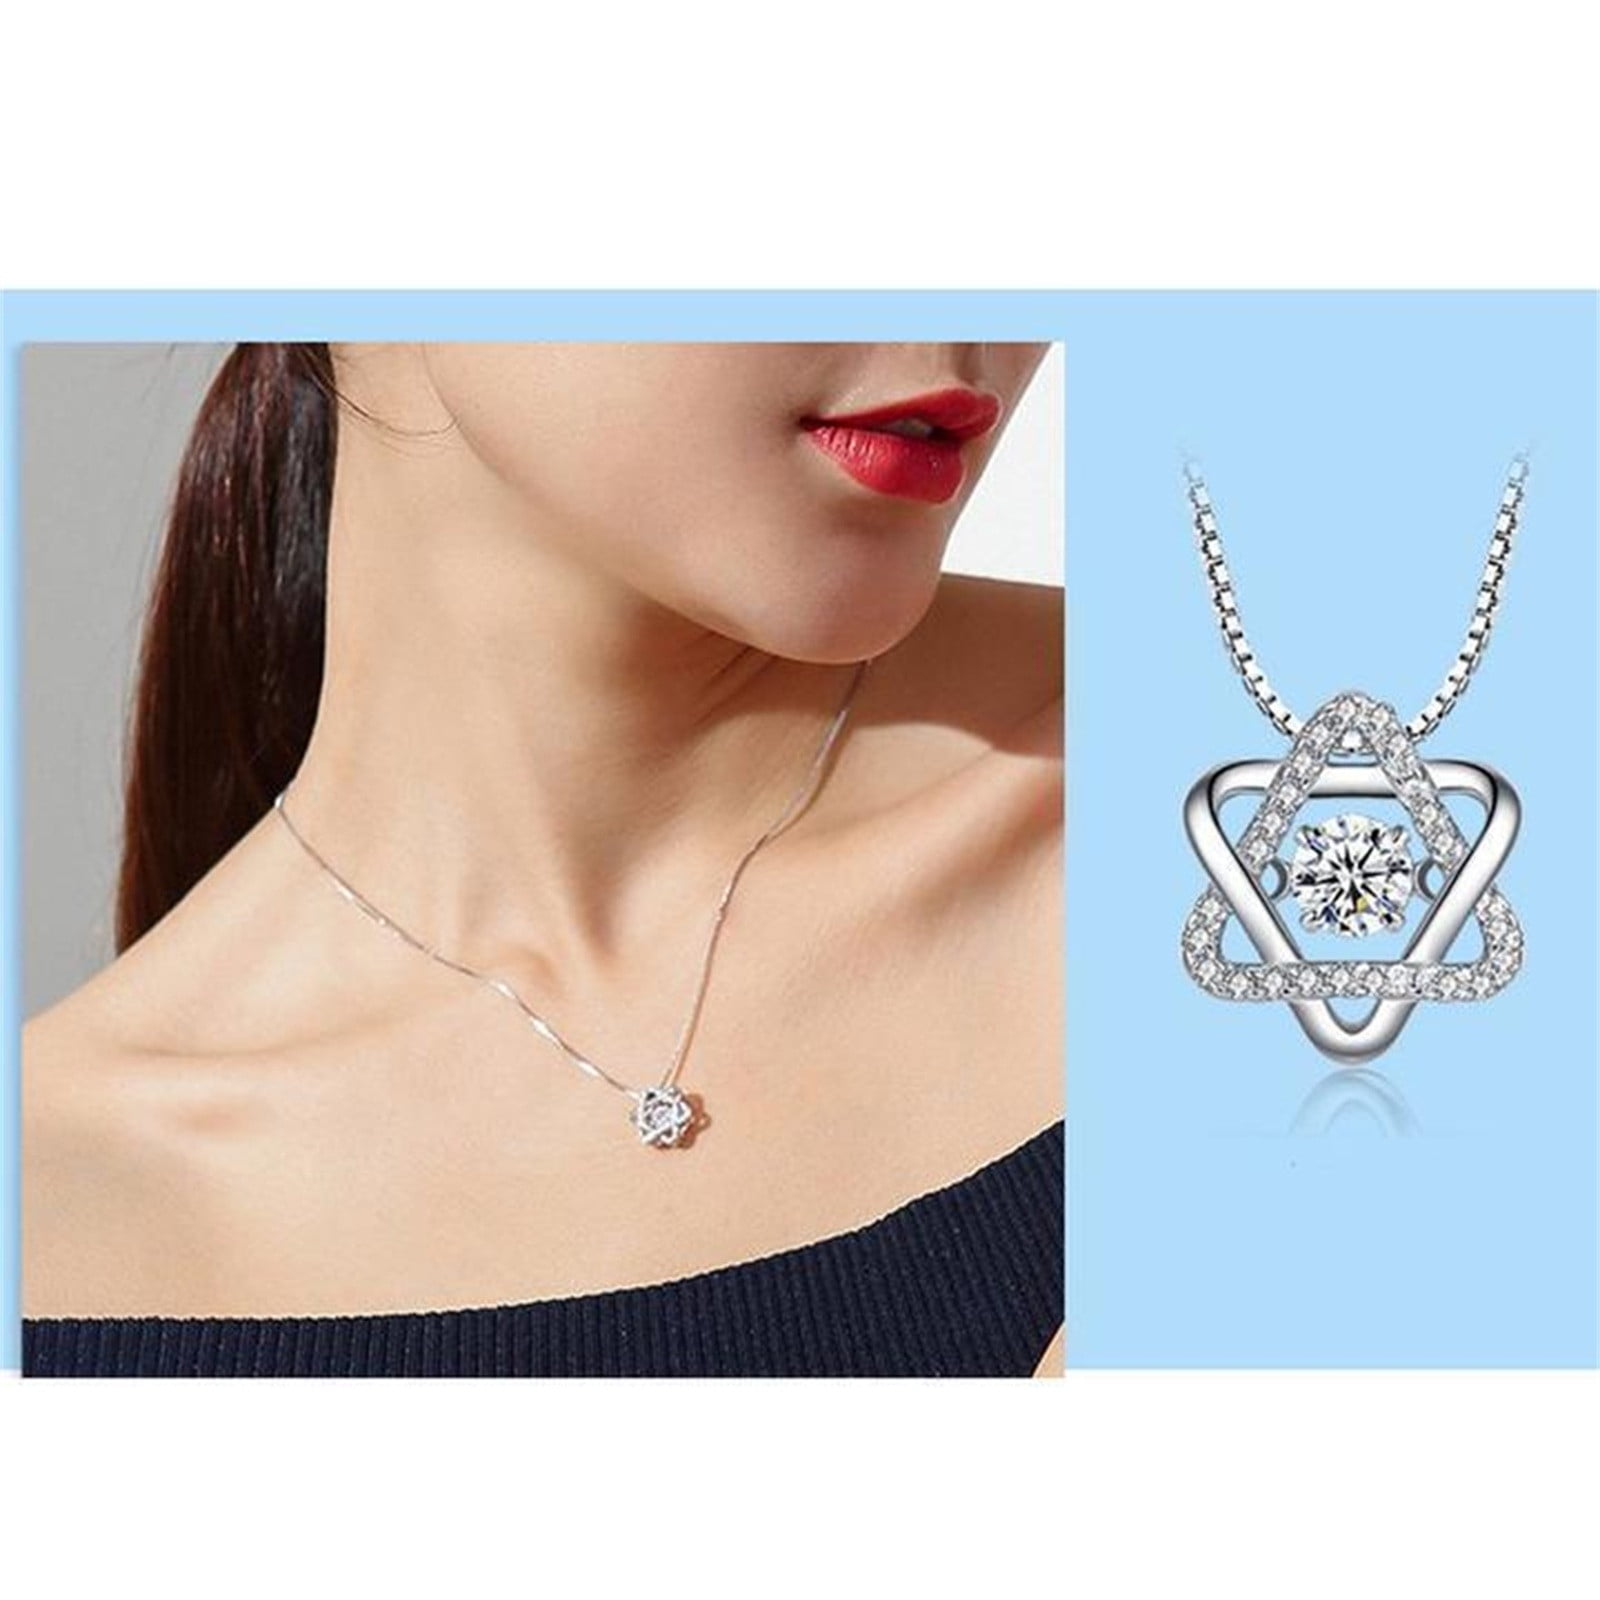 Wmkox8yii Twinkling Necklace Silver Zircon Pendant Women's